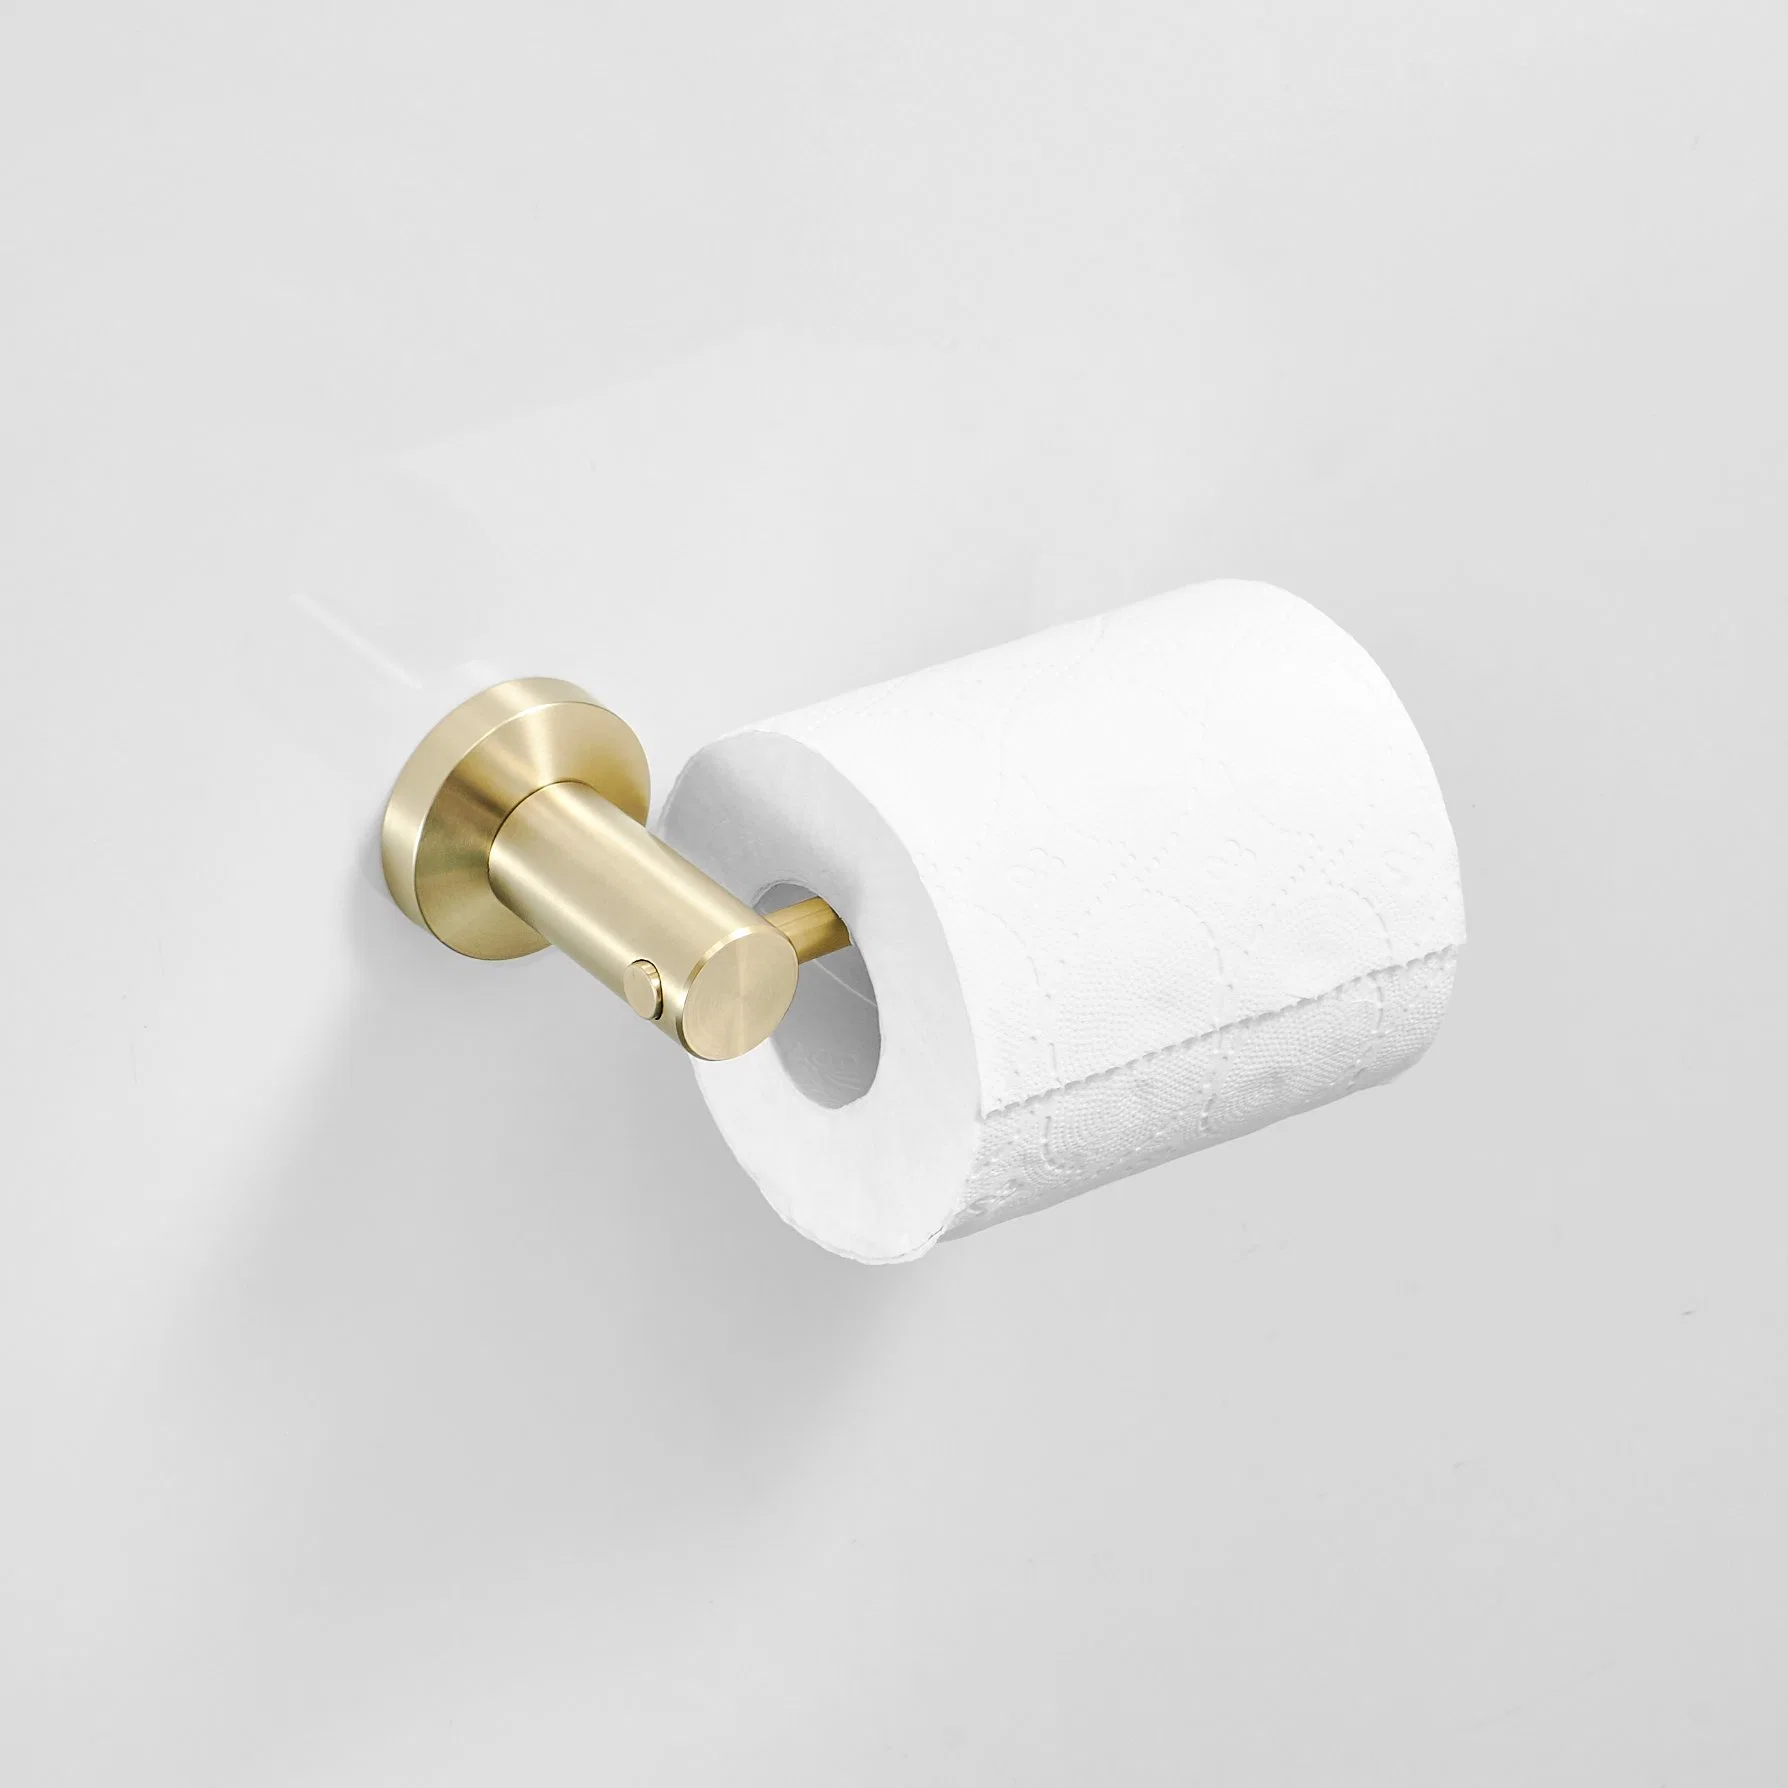 Toilettenpapierhalter Aus Edelstahl Badezimmer Papierhandtuchspender Tissue Papierrollenhalter